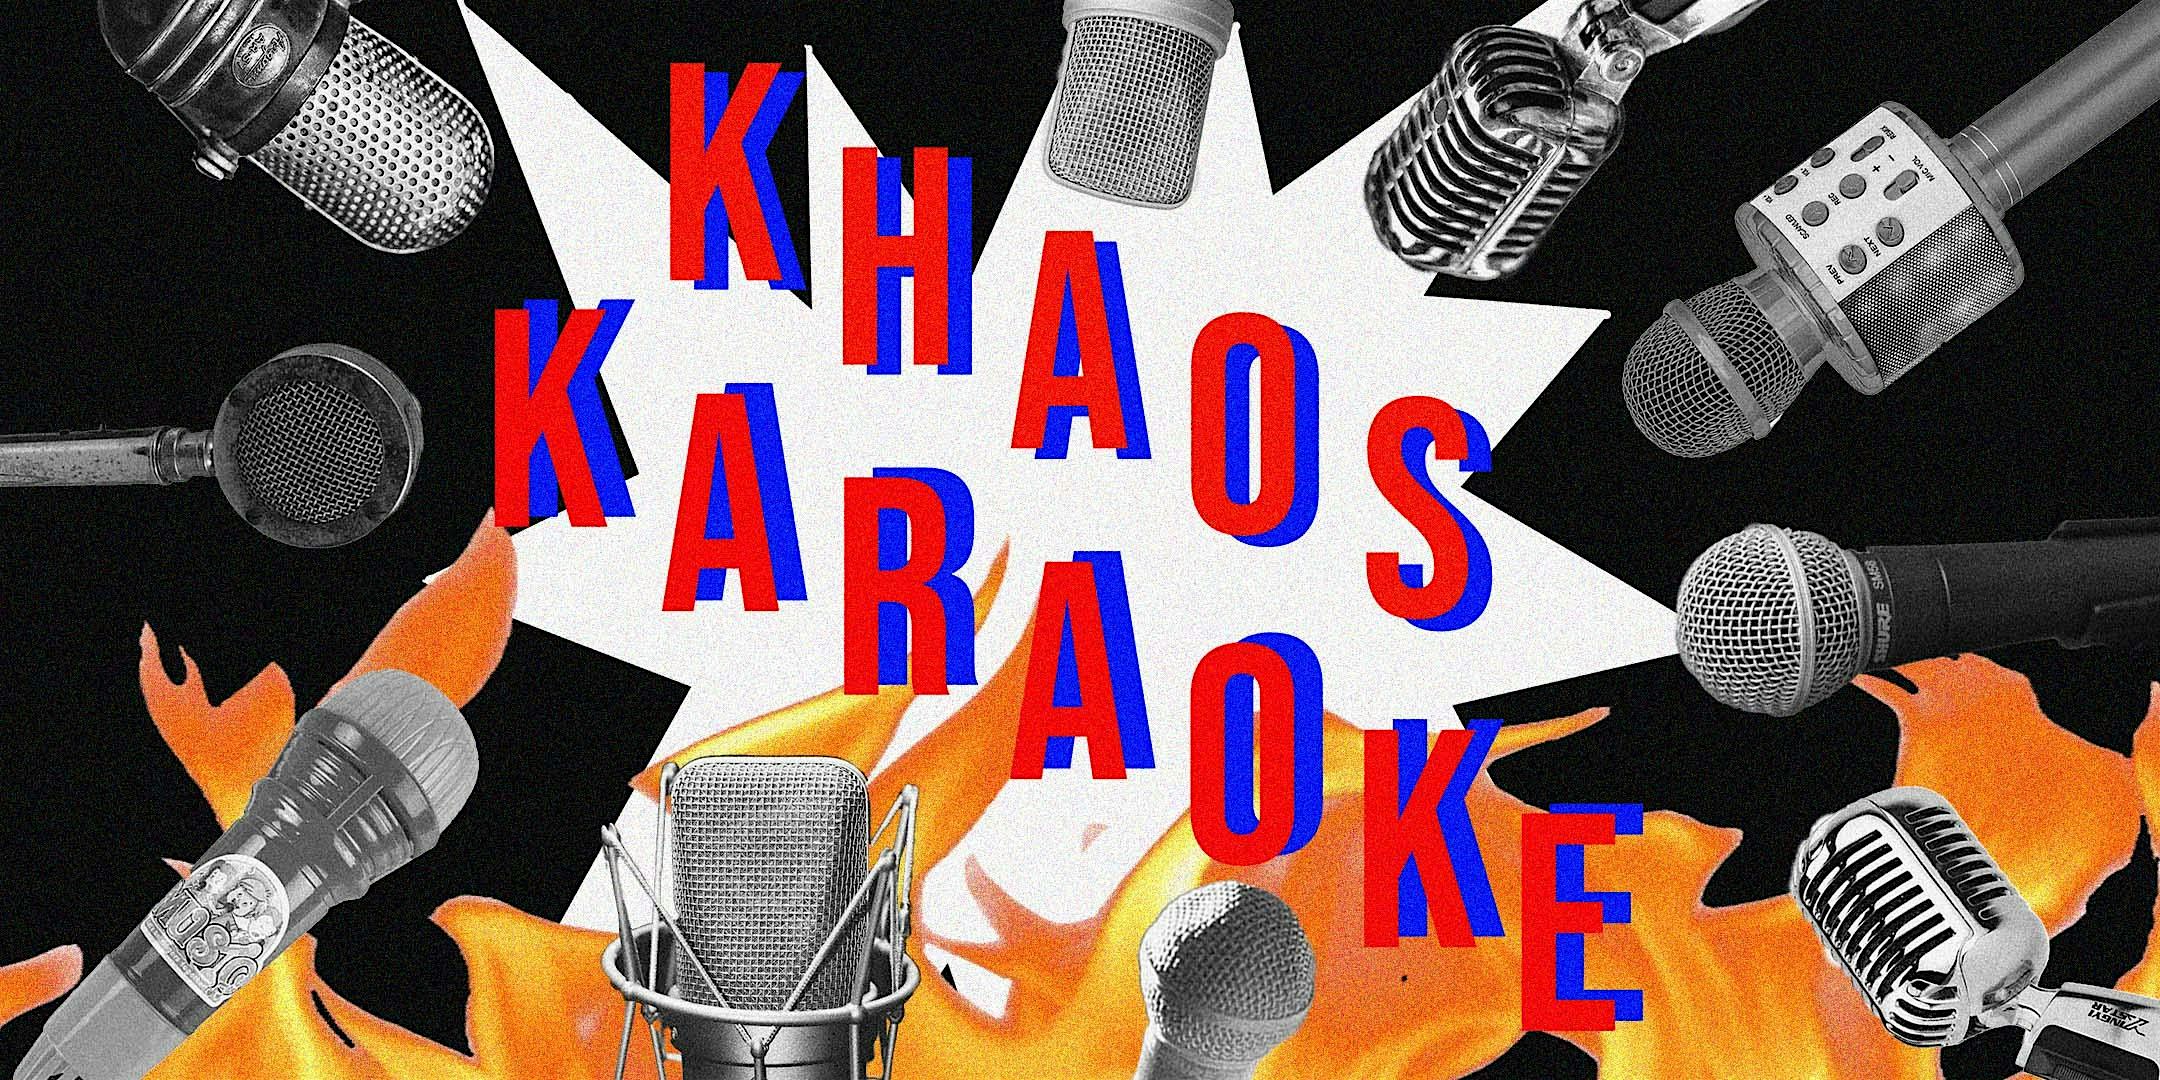 Late Night Khaos Karaoke